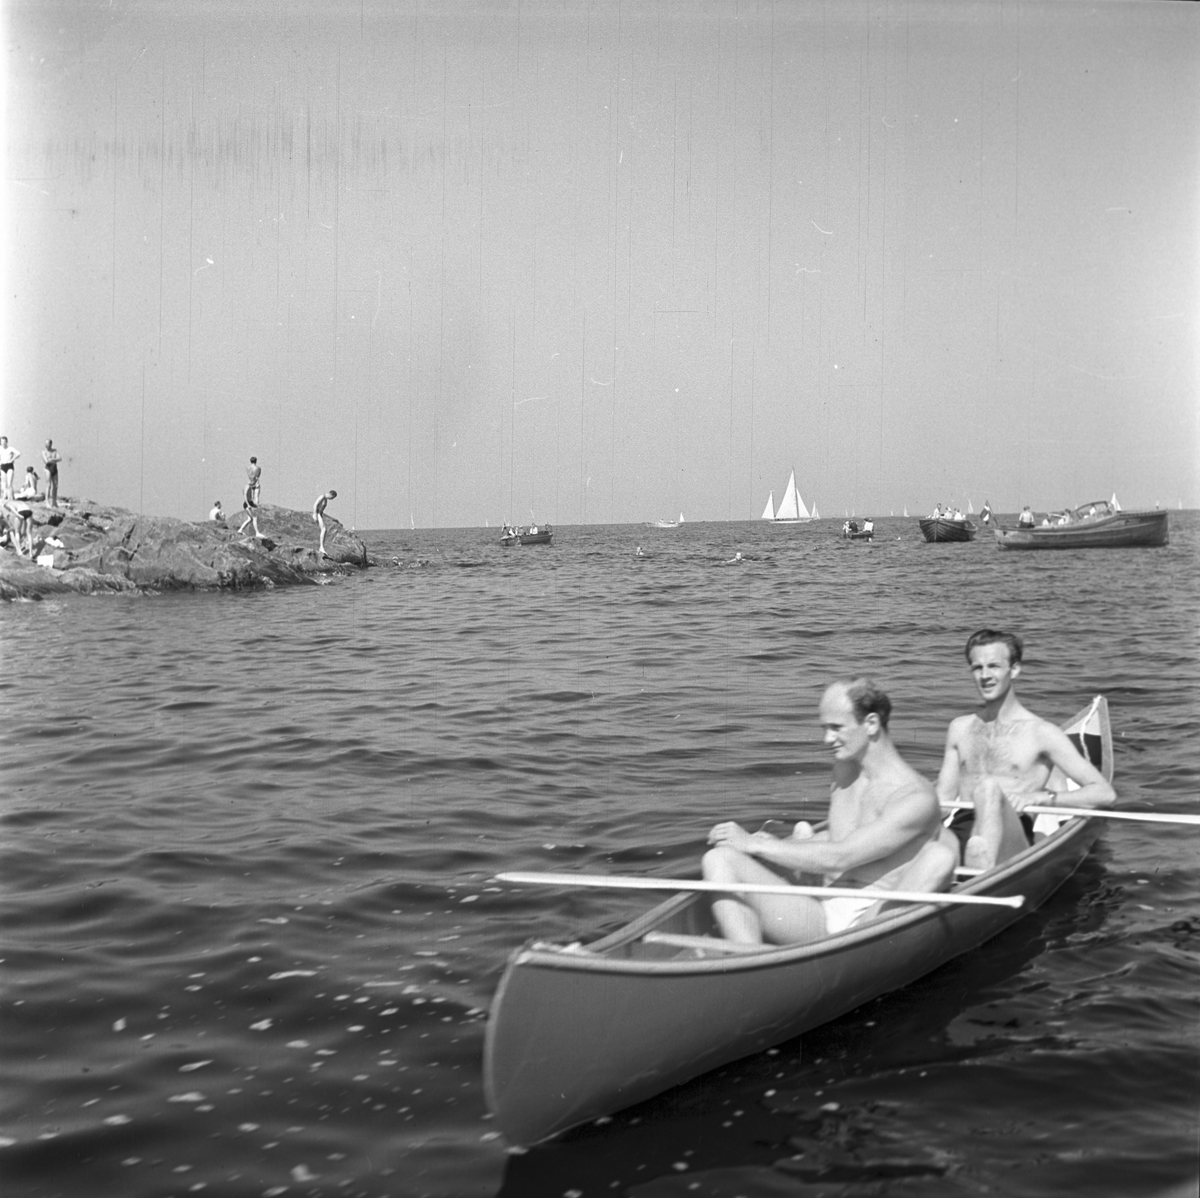 Furuskär
Furuviksparken invigdes pingstdagen 1936.

Två män i en kanot
Badande människor på skäret












